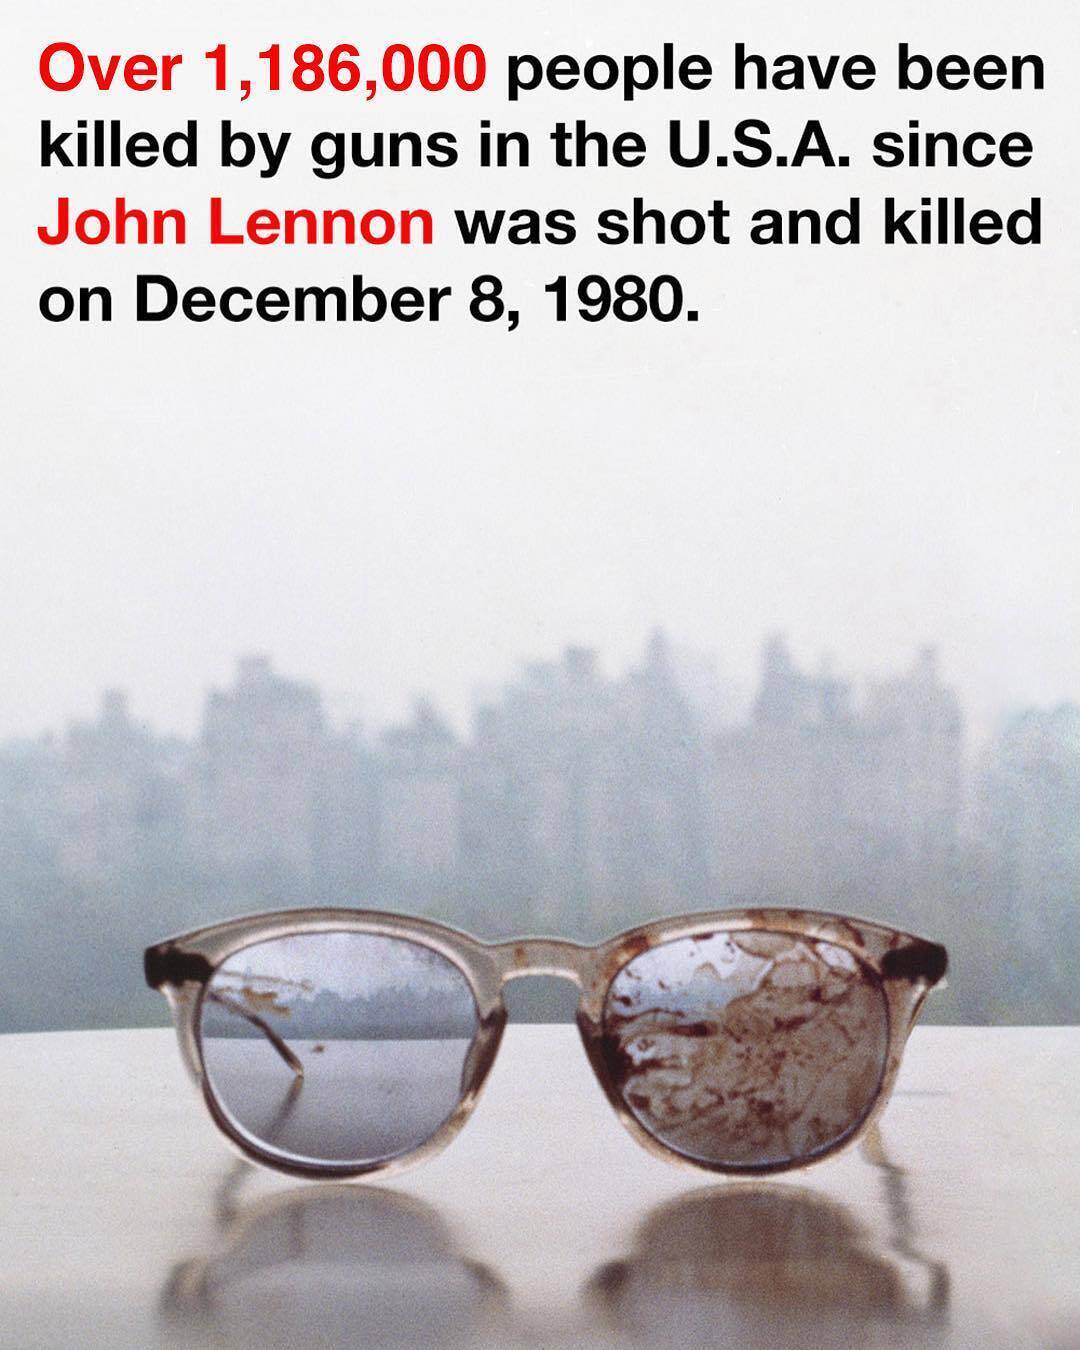 衝撃的な1枚の写真に 37年前に殺害されたジョン レノンから社会へメッセージ 17年12月8日 エキサイトニュース